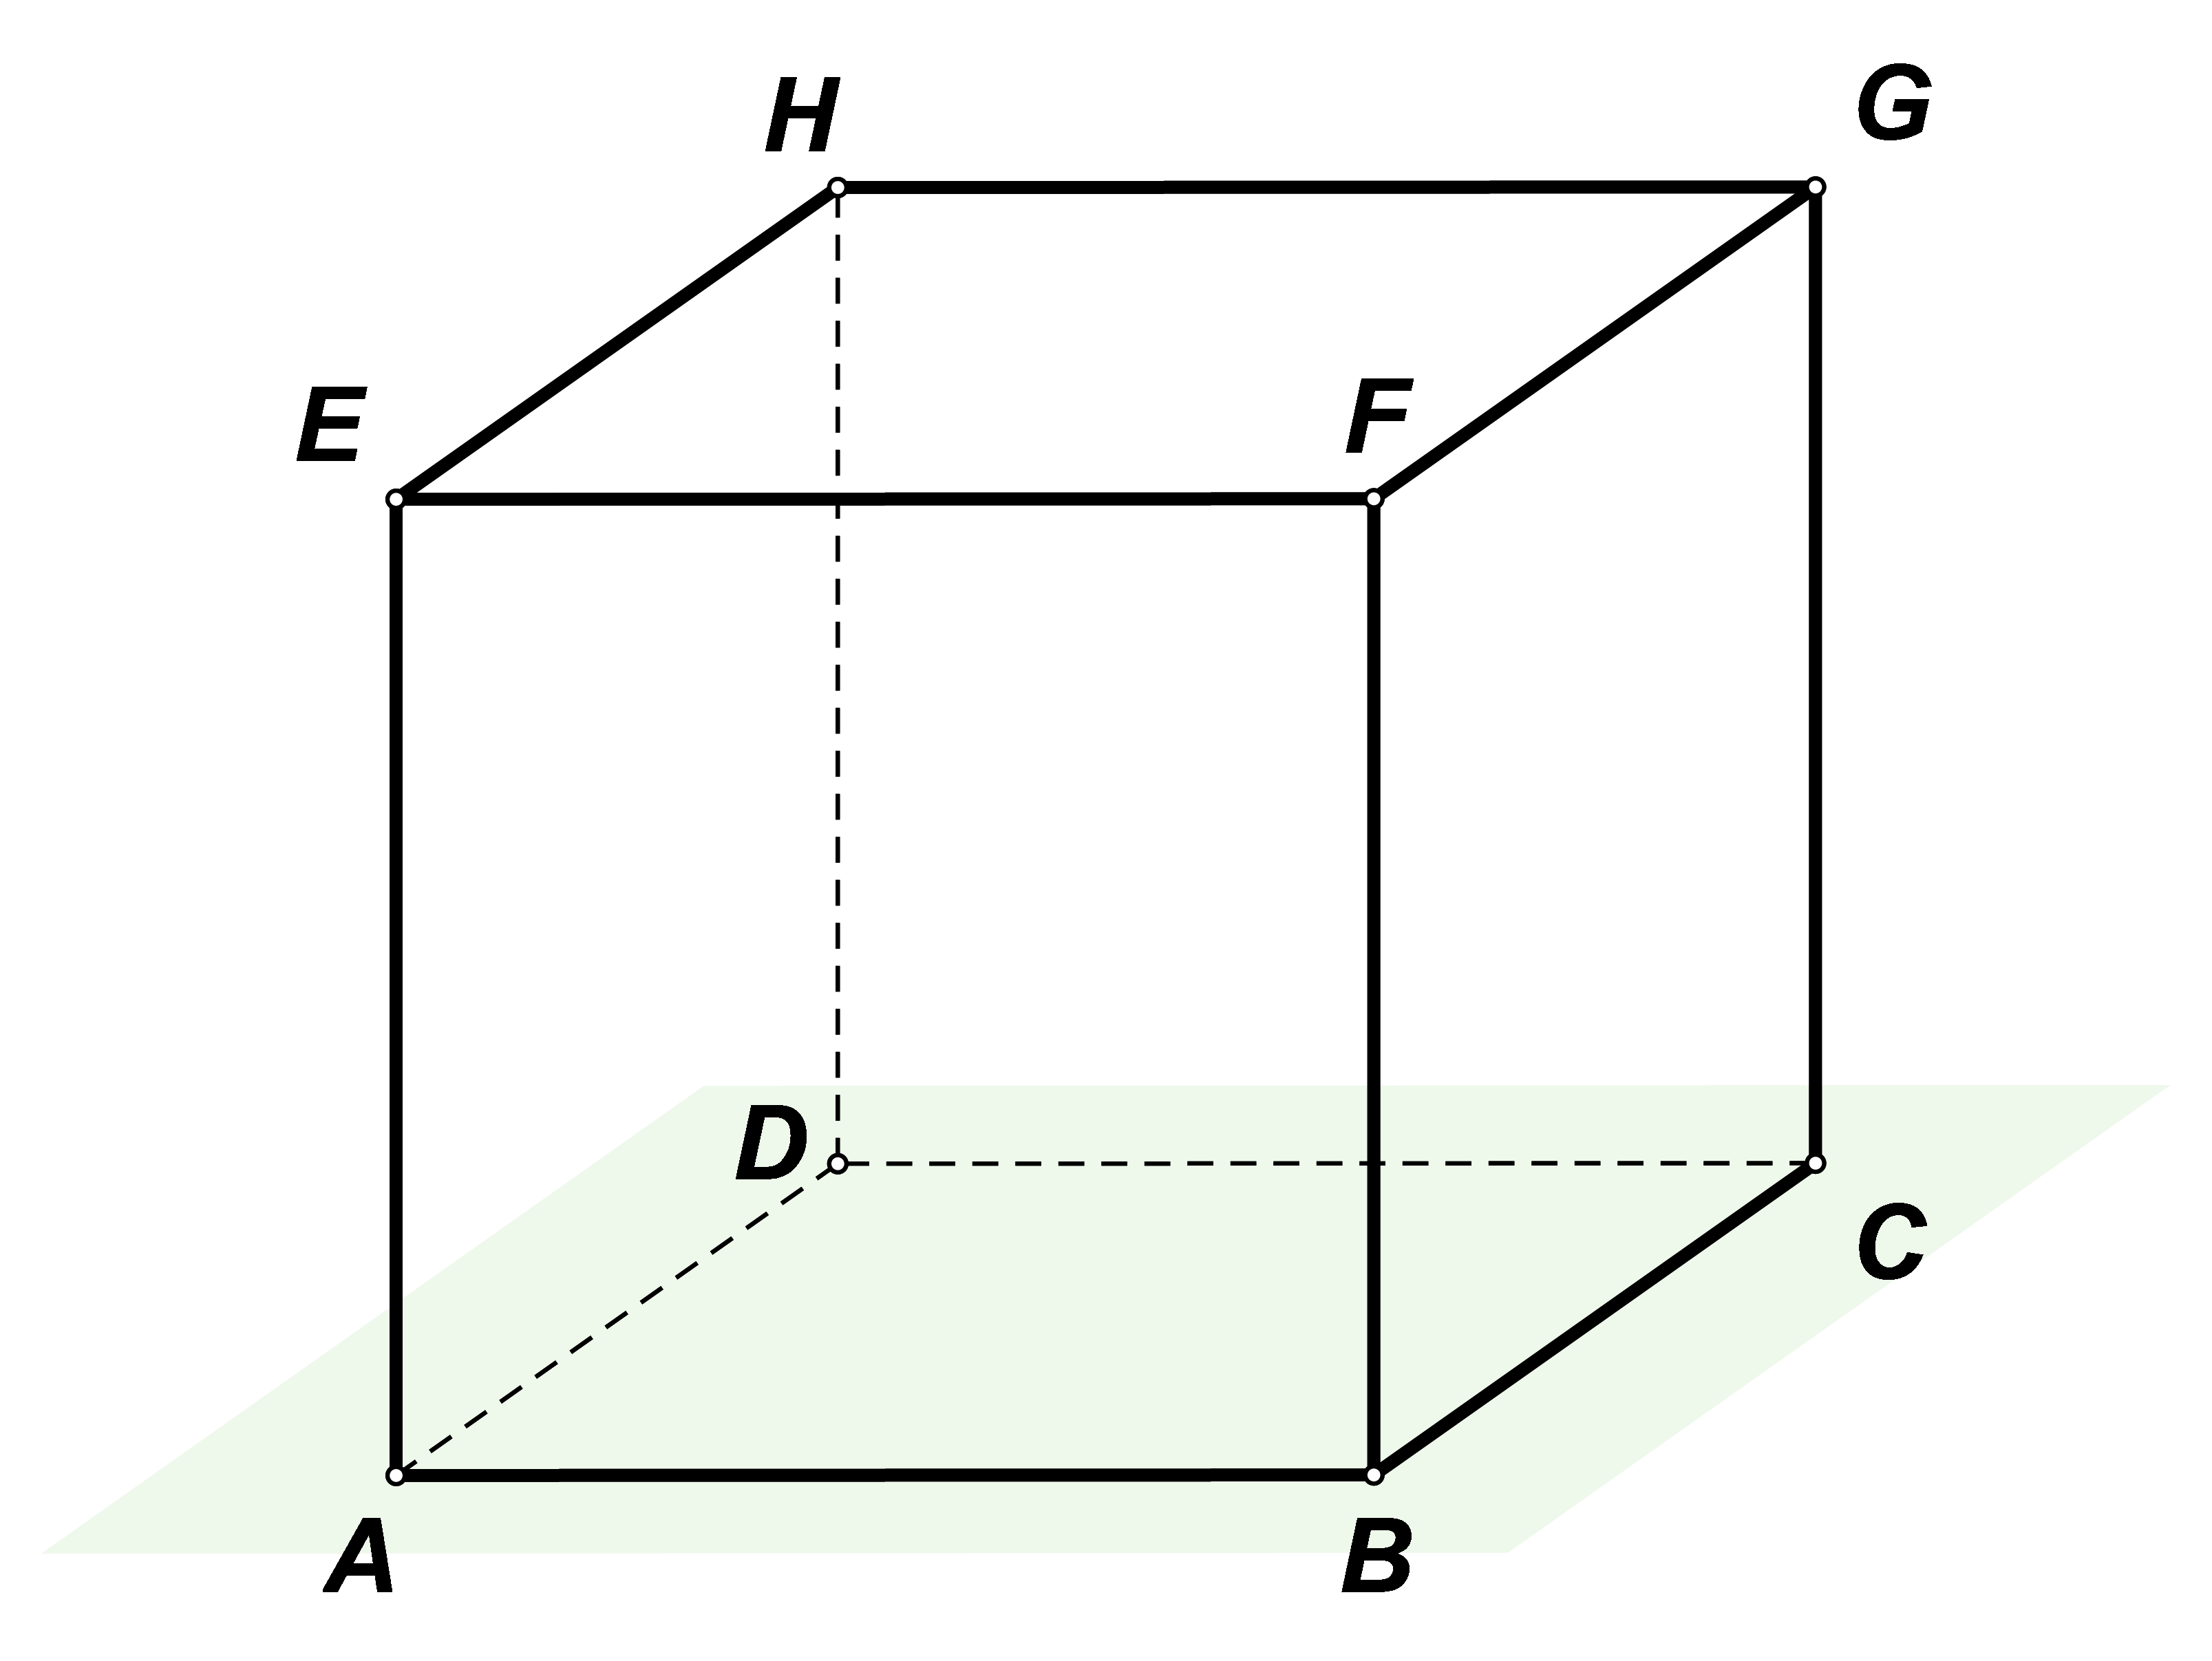 Slika prikazuje kocku ABCDEFGH i ravninu ABC.